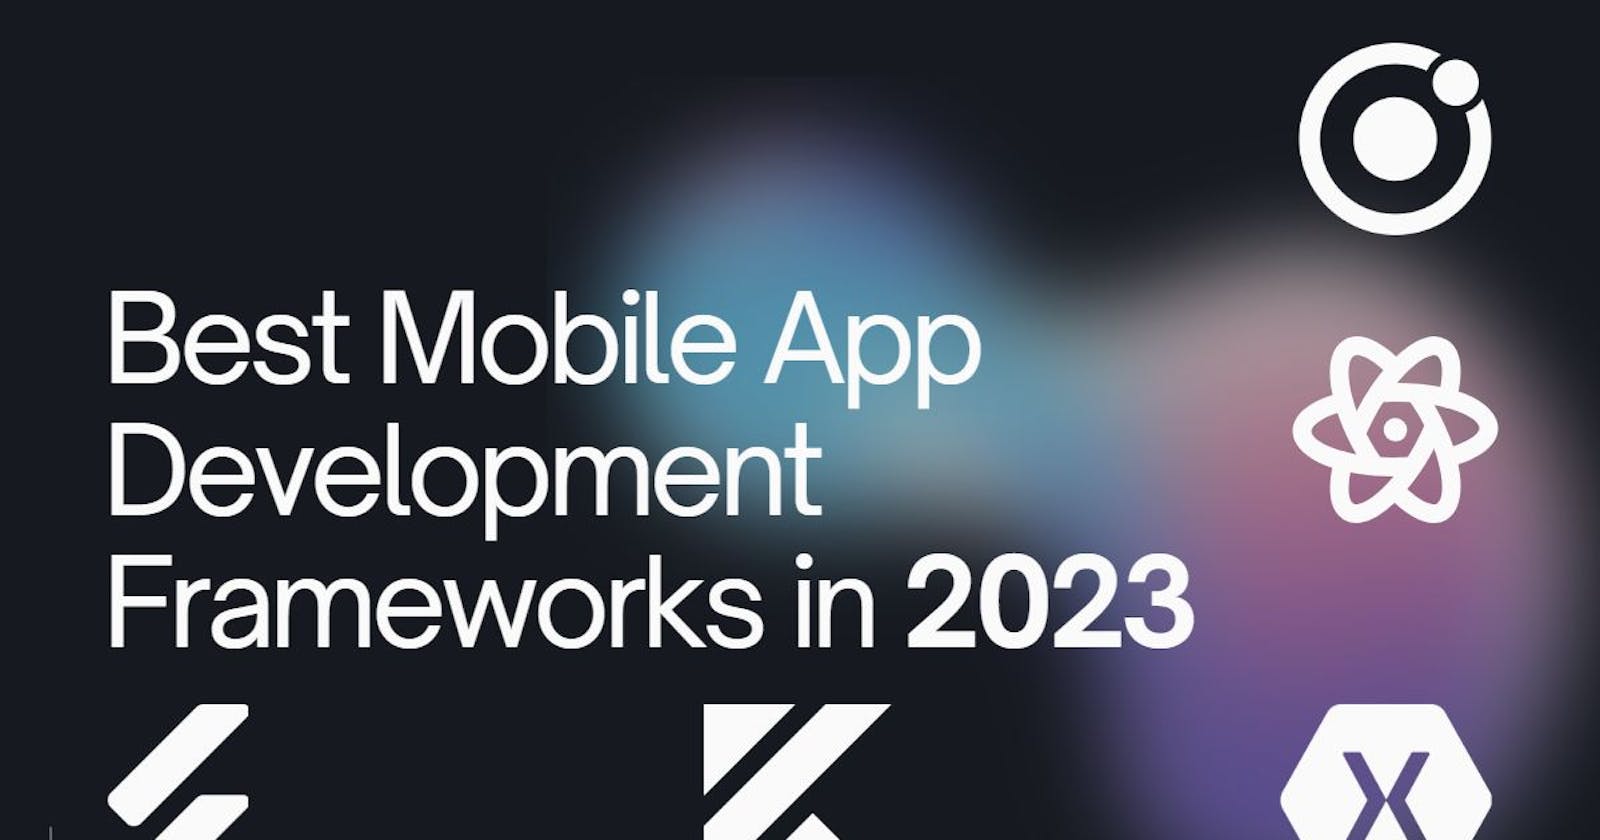 Best Mobile App Development Frameworks in 2023